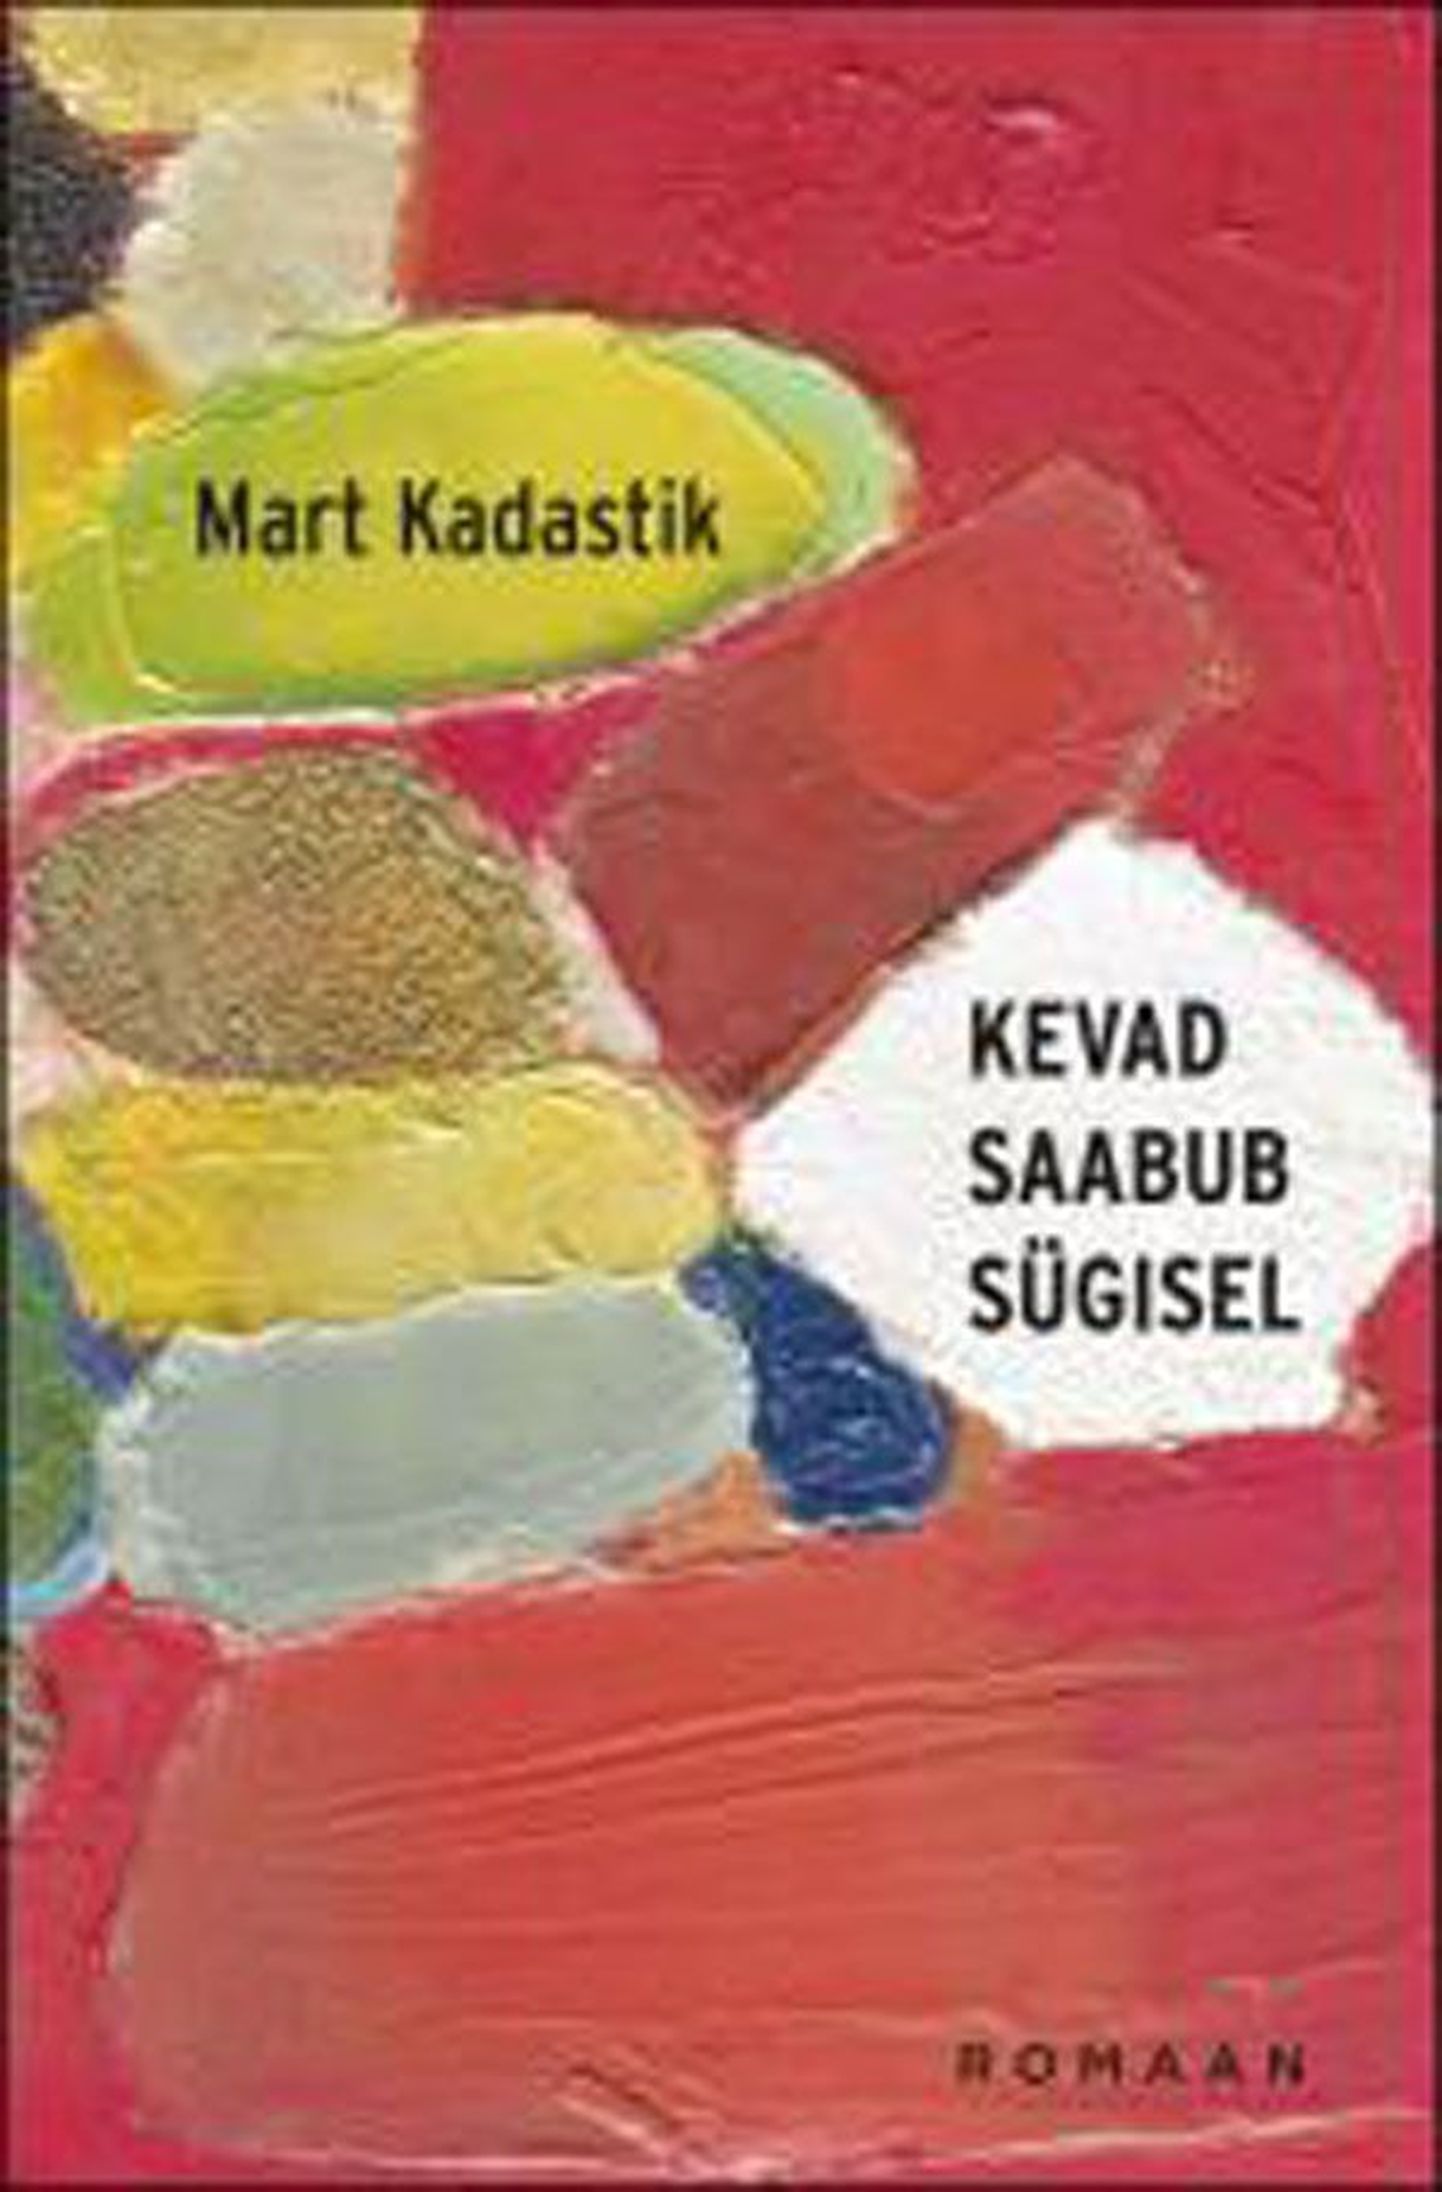 Raamat
Mart Kadastik
«Kevad saabub sügisel»
Varrak, 2013